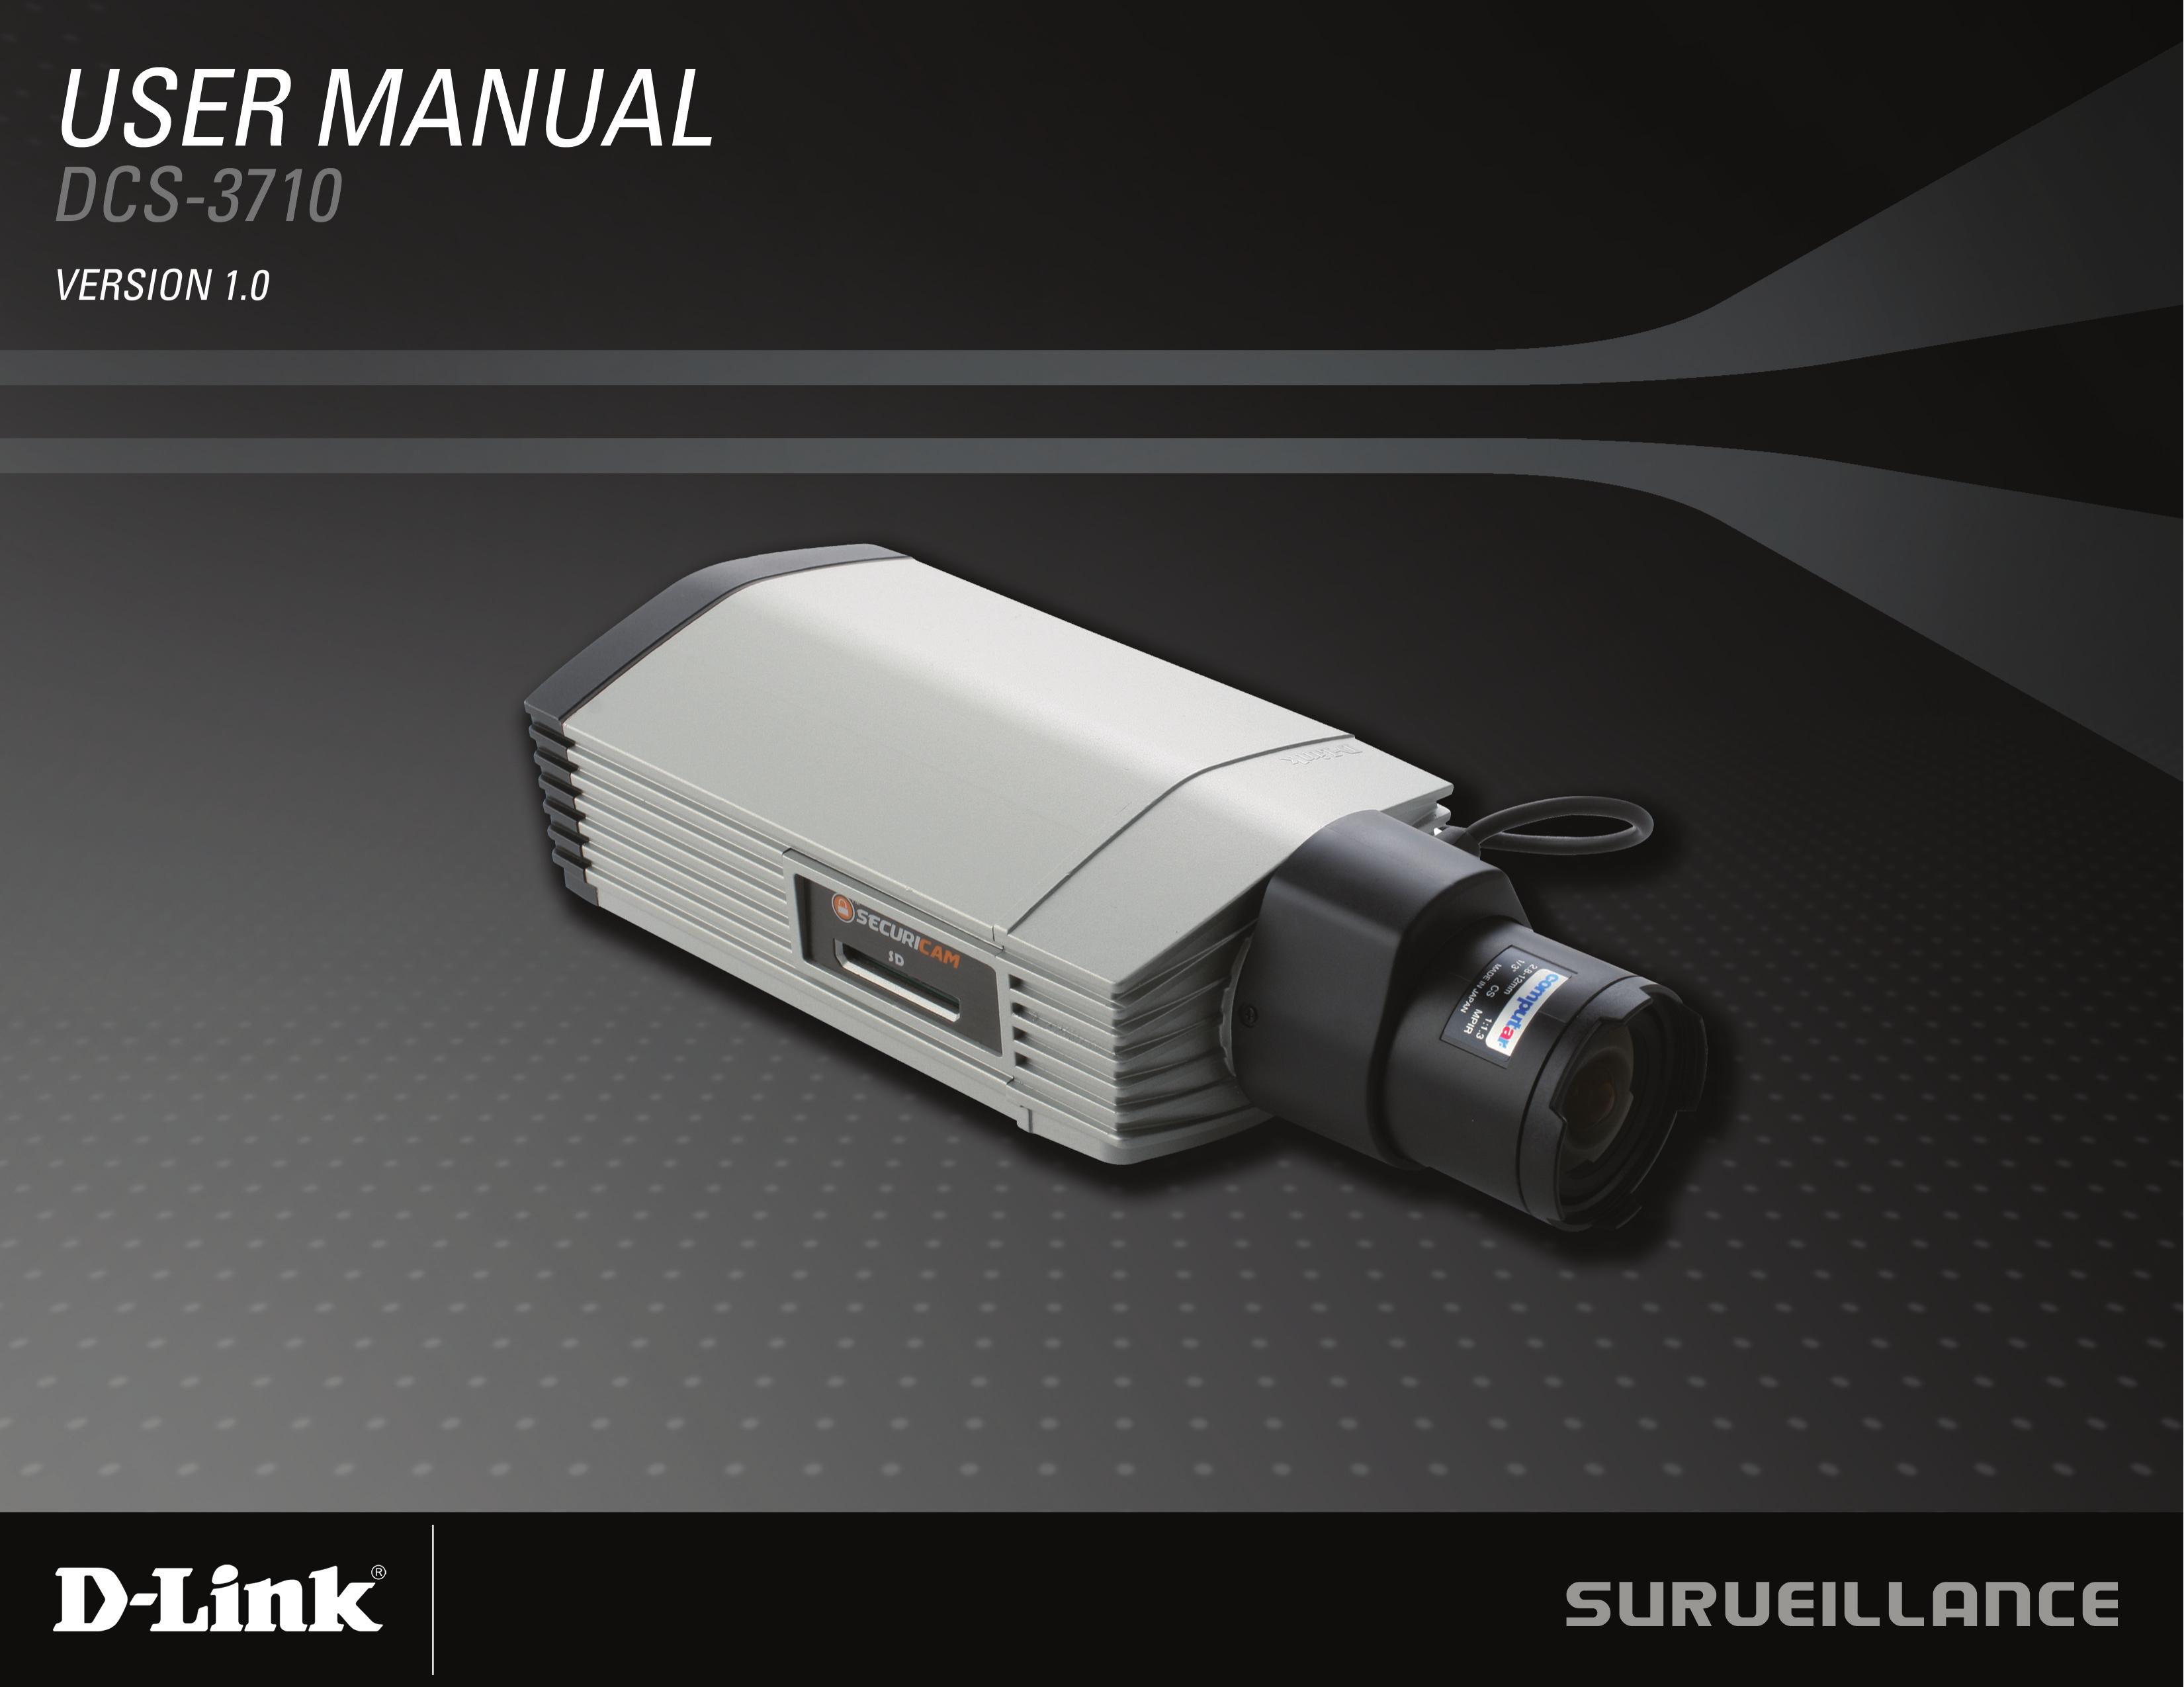 D-Link DCS-3710 Security Camera User Manual